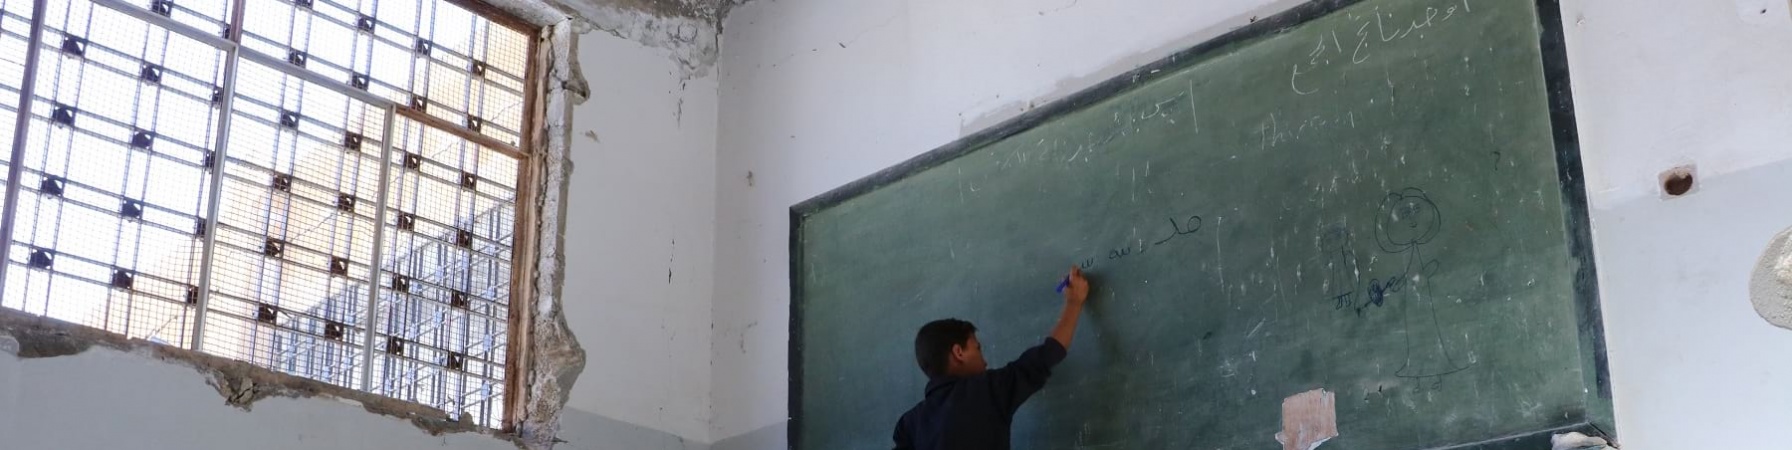 bambino-siriano-scrive-lavagna-in-scuola-distrutta